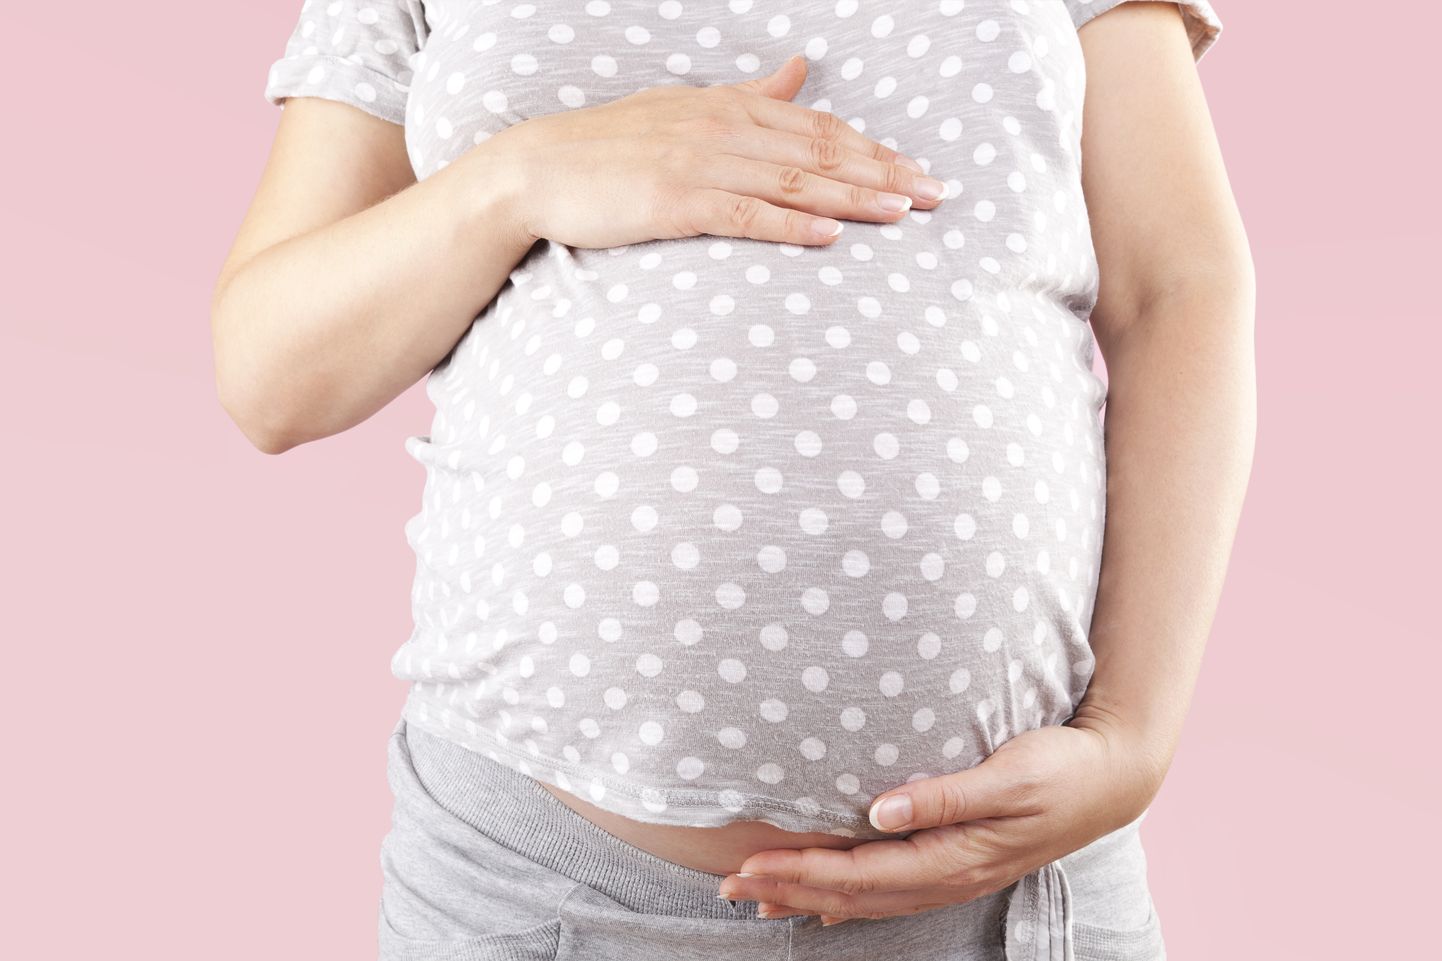 Raseduse ajal peaks naine tarbima umbes 300 kilokalorit tavapärasest rohkem.